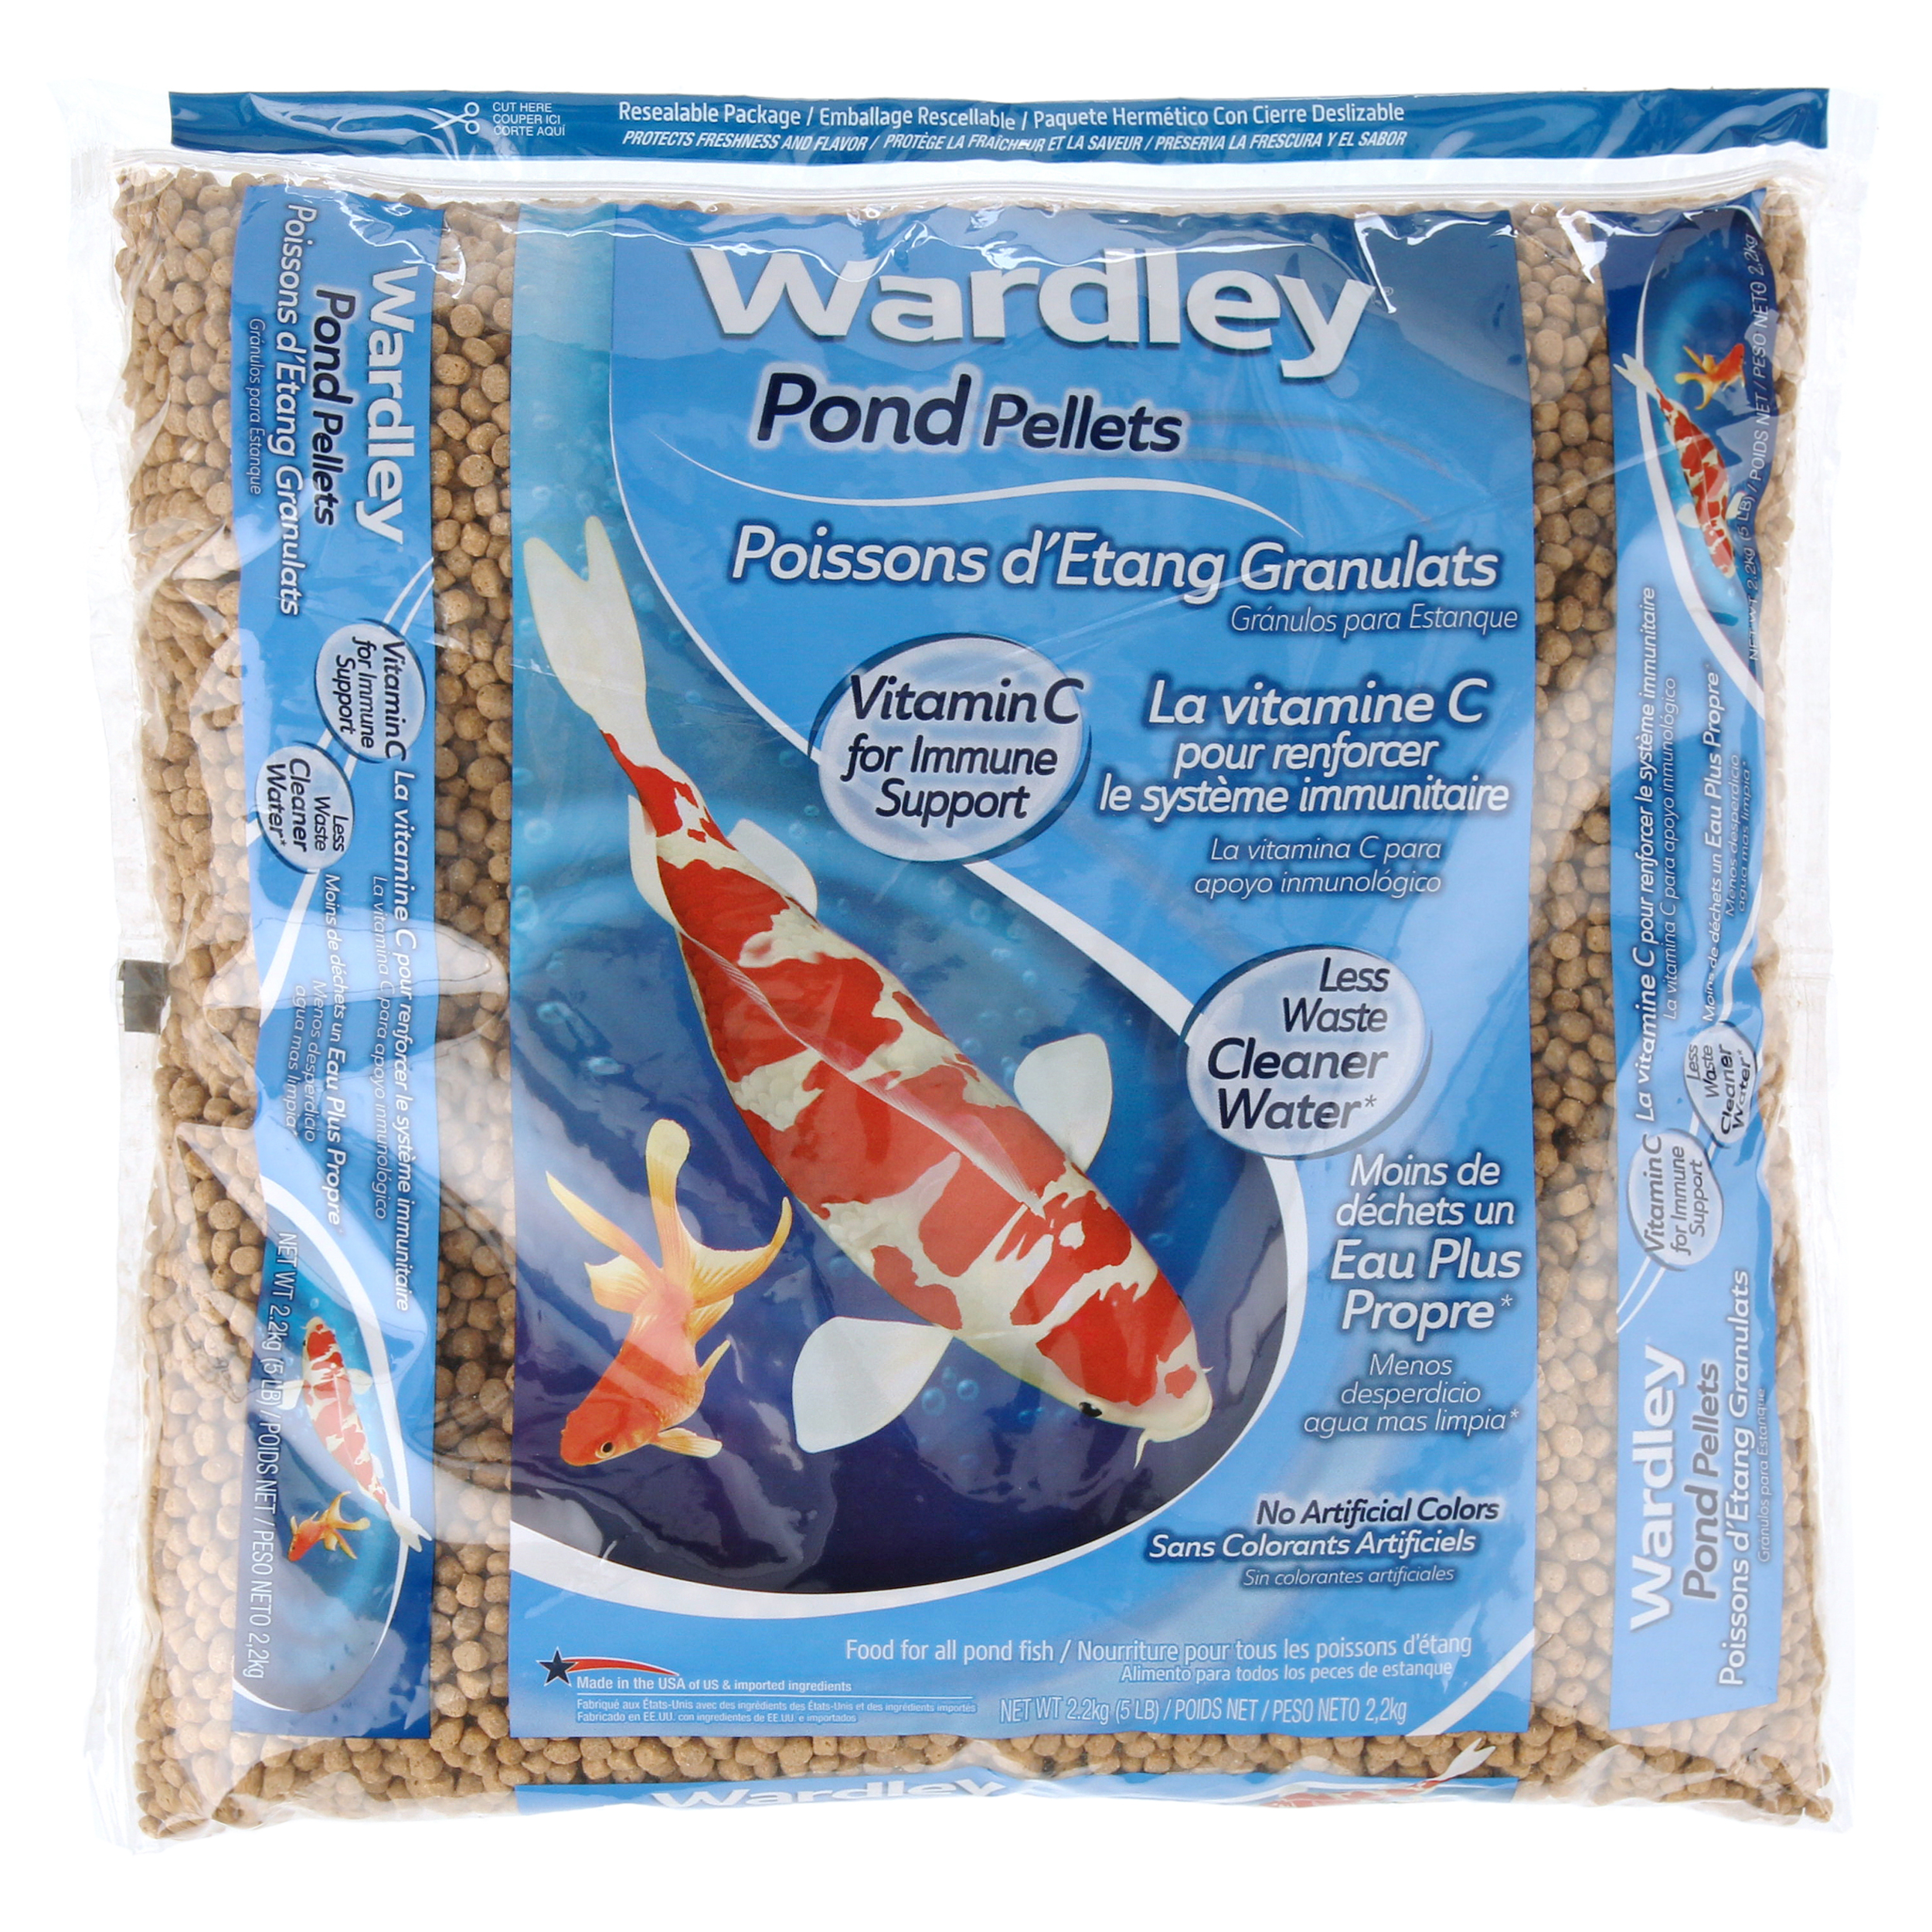 Wardley Pond Pellets Koi & Pond Fish Food, 5 lbs - image 5 of 7